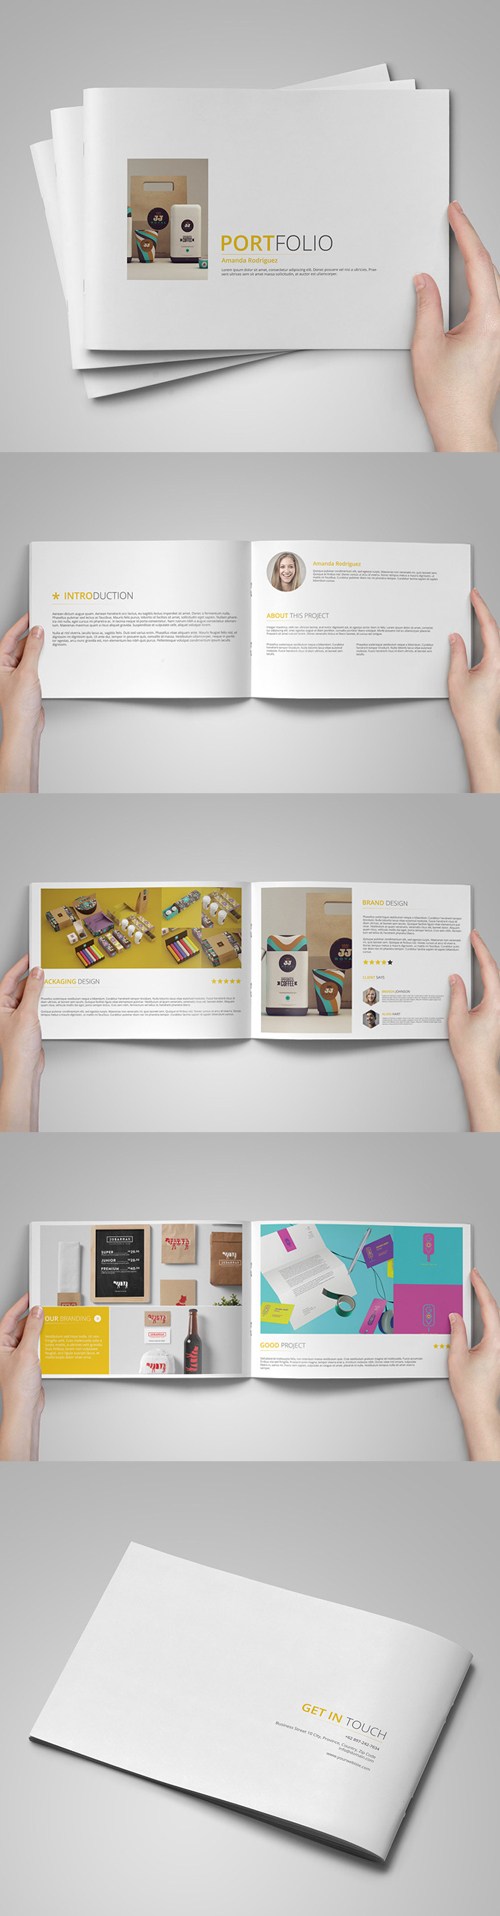 16例创意多功能商业小册子设计模板